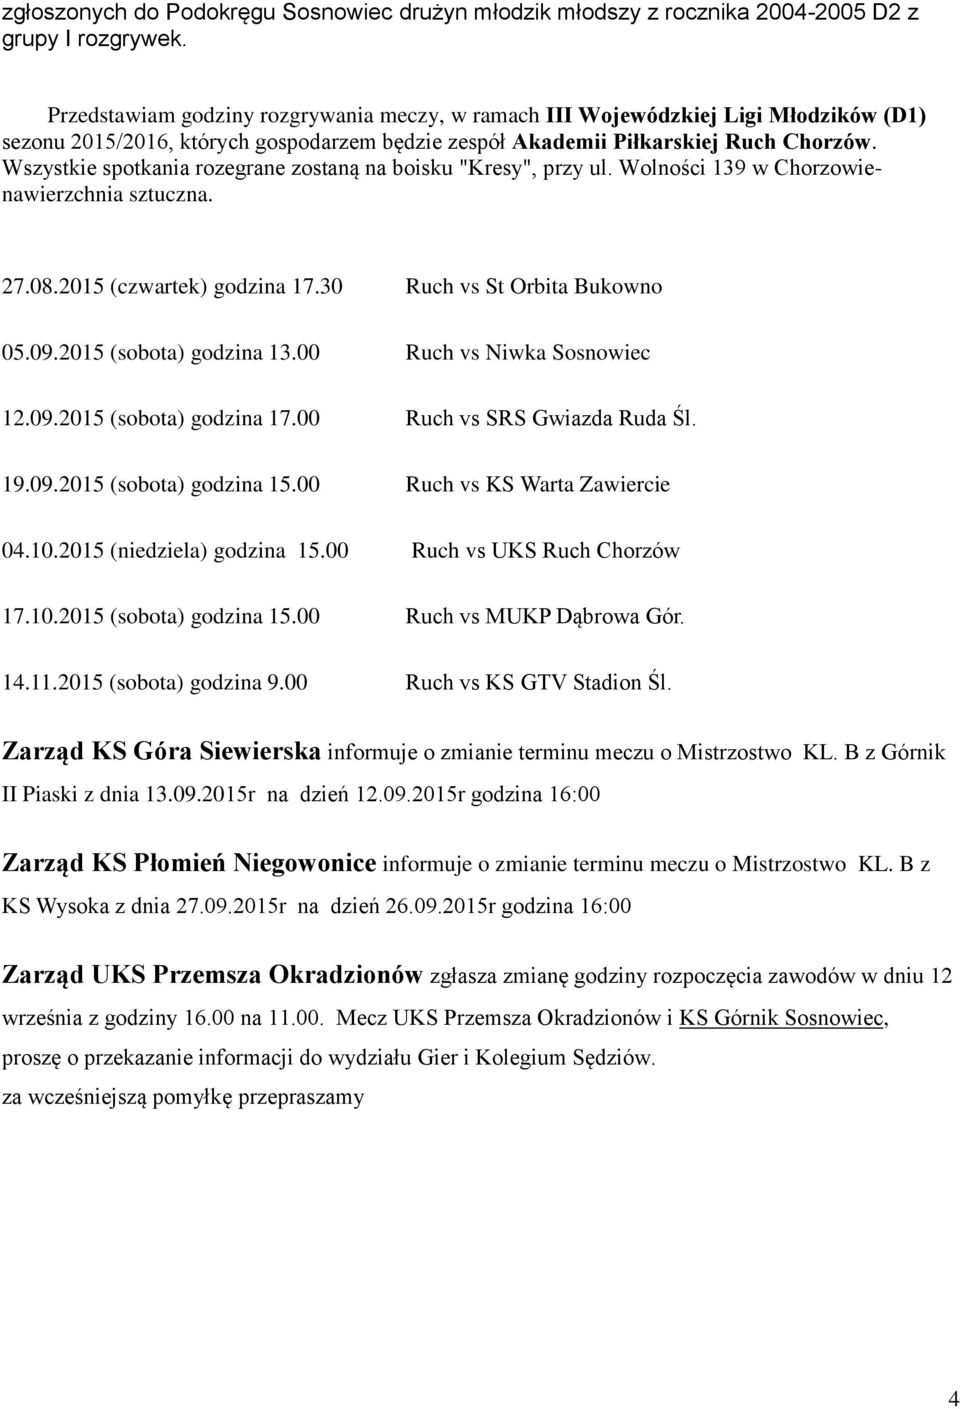 Wszystkie spotkania rozegrane zostaną na boisku "Kresy", przy ul. Wolności 139 w Chorzowienawierzchnia sztuczna. 27.08.2015 (czwartek) godzina 17.30 Ruch vs St Orbita Bukowno 05.09.